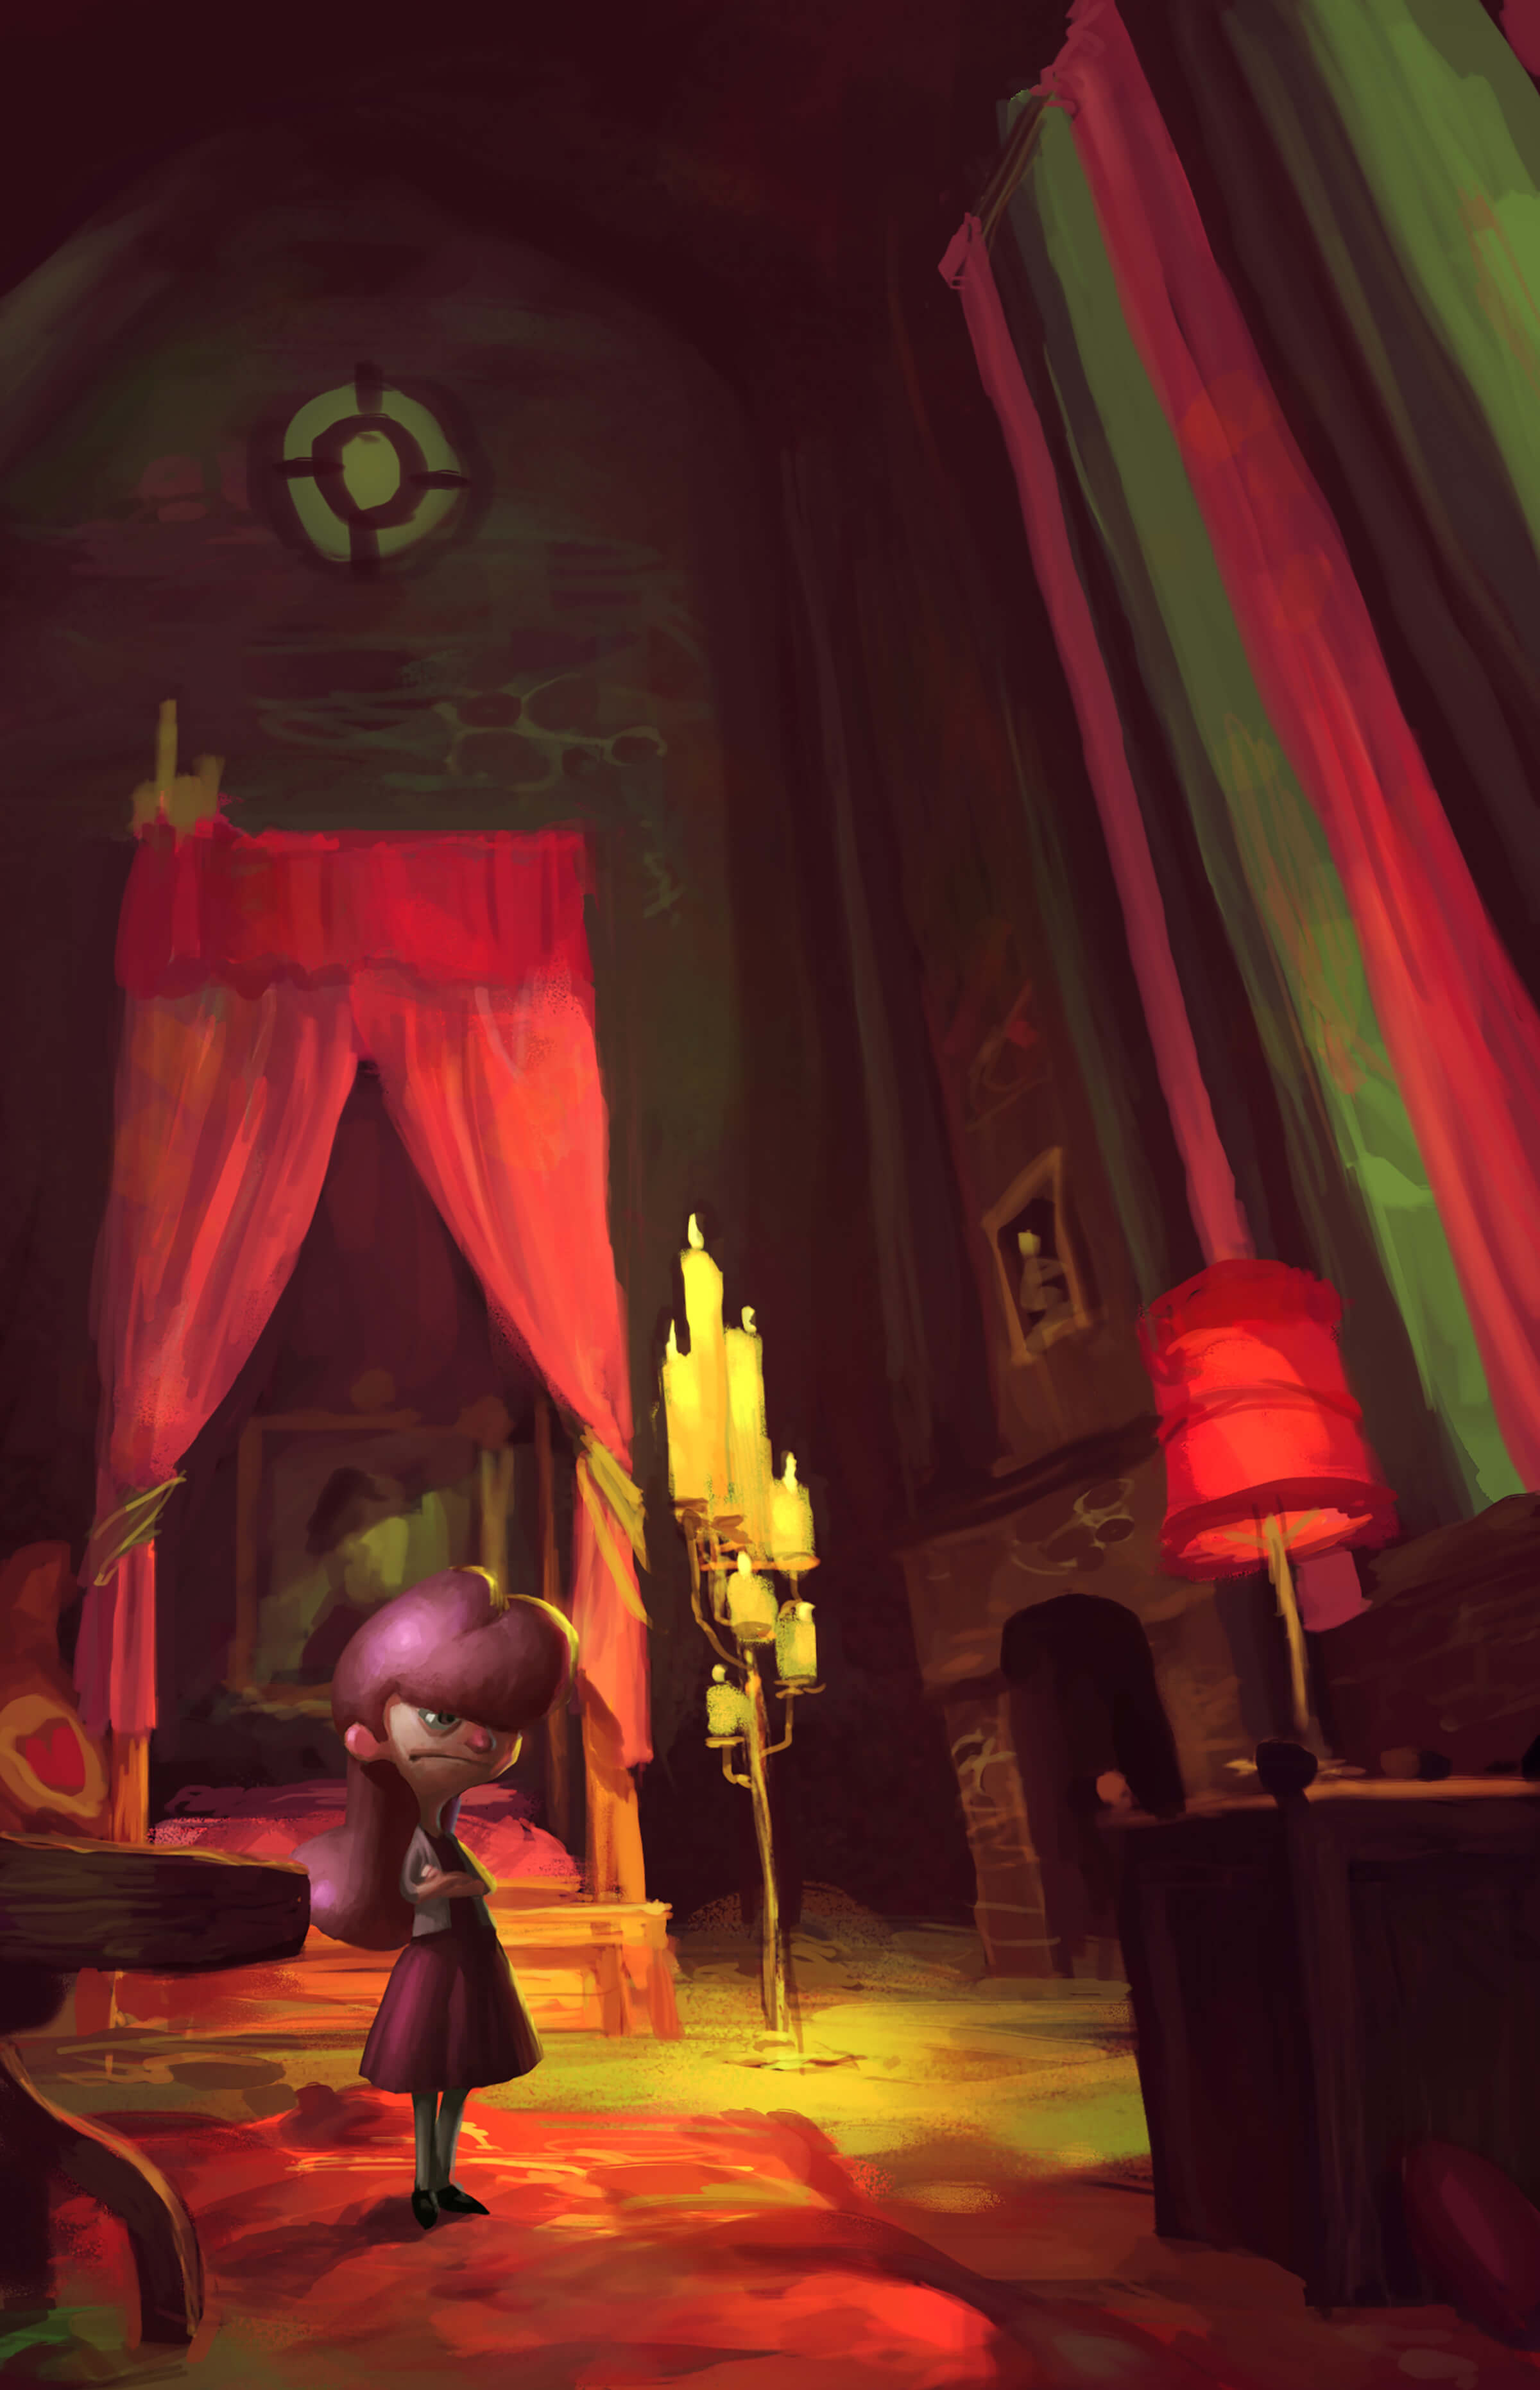 Una joven con una mirada molesta se encuentra en un dormitorio cavernoso a la luz de las velas. Su cabello, vestido y muebles son de color rosa.